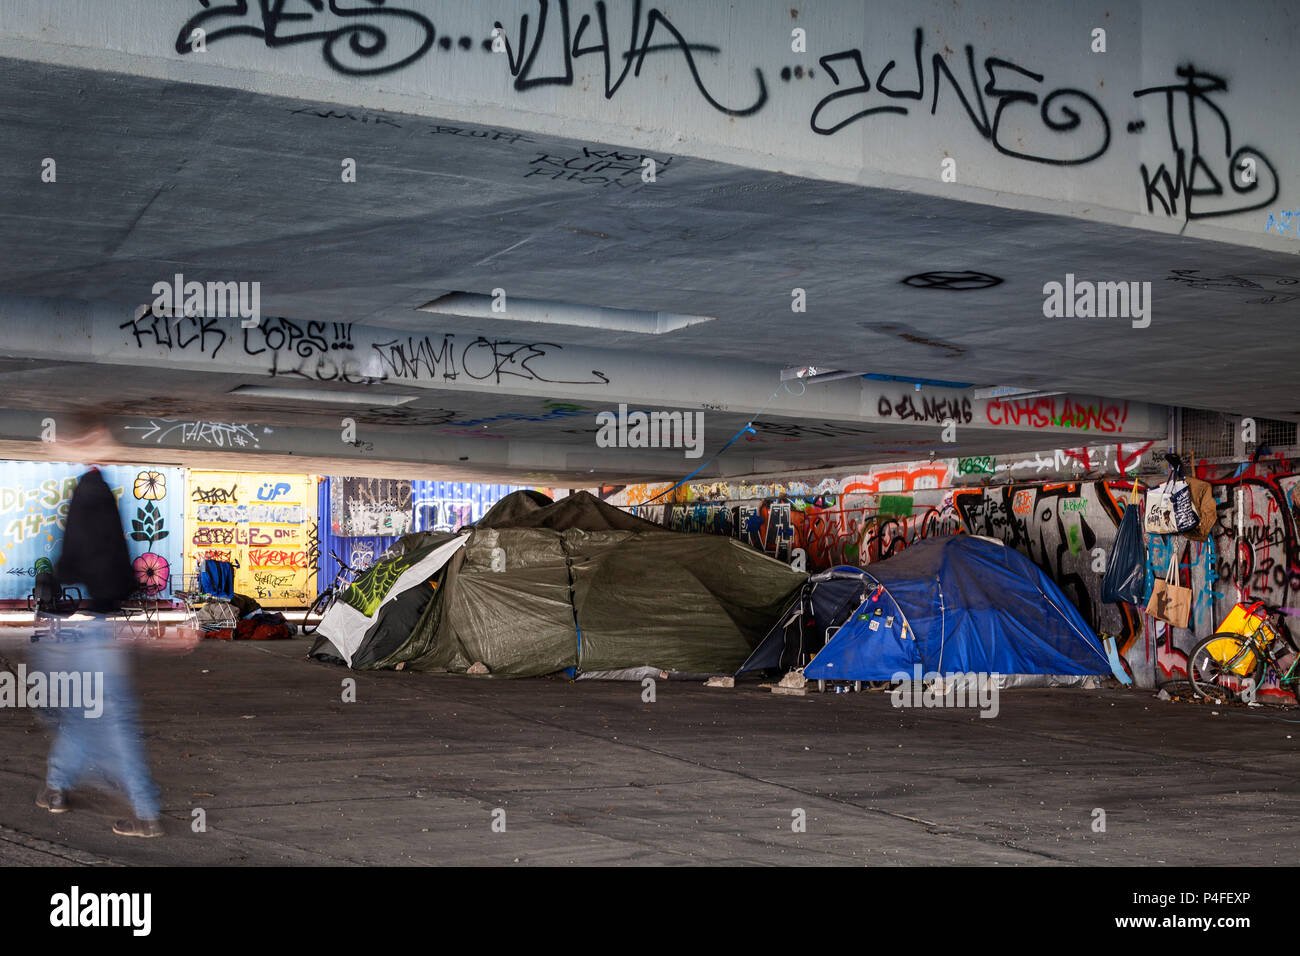 homeless shelter berlin